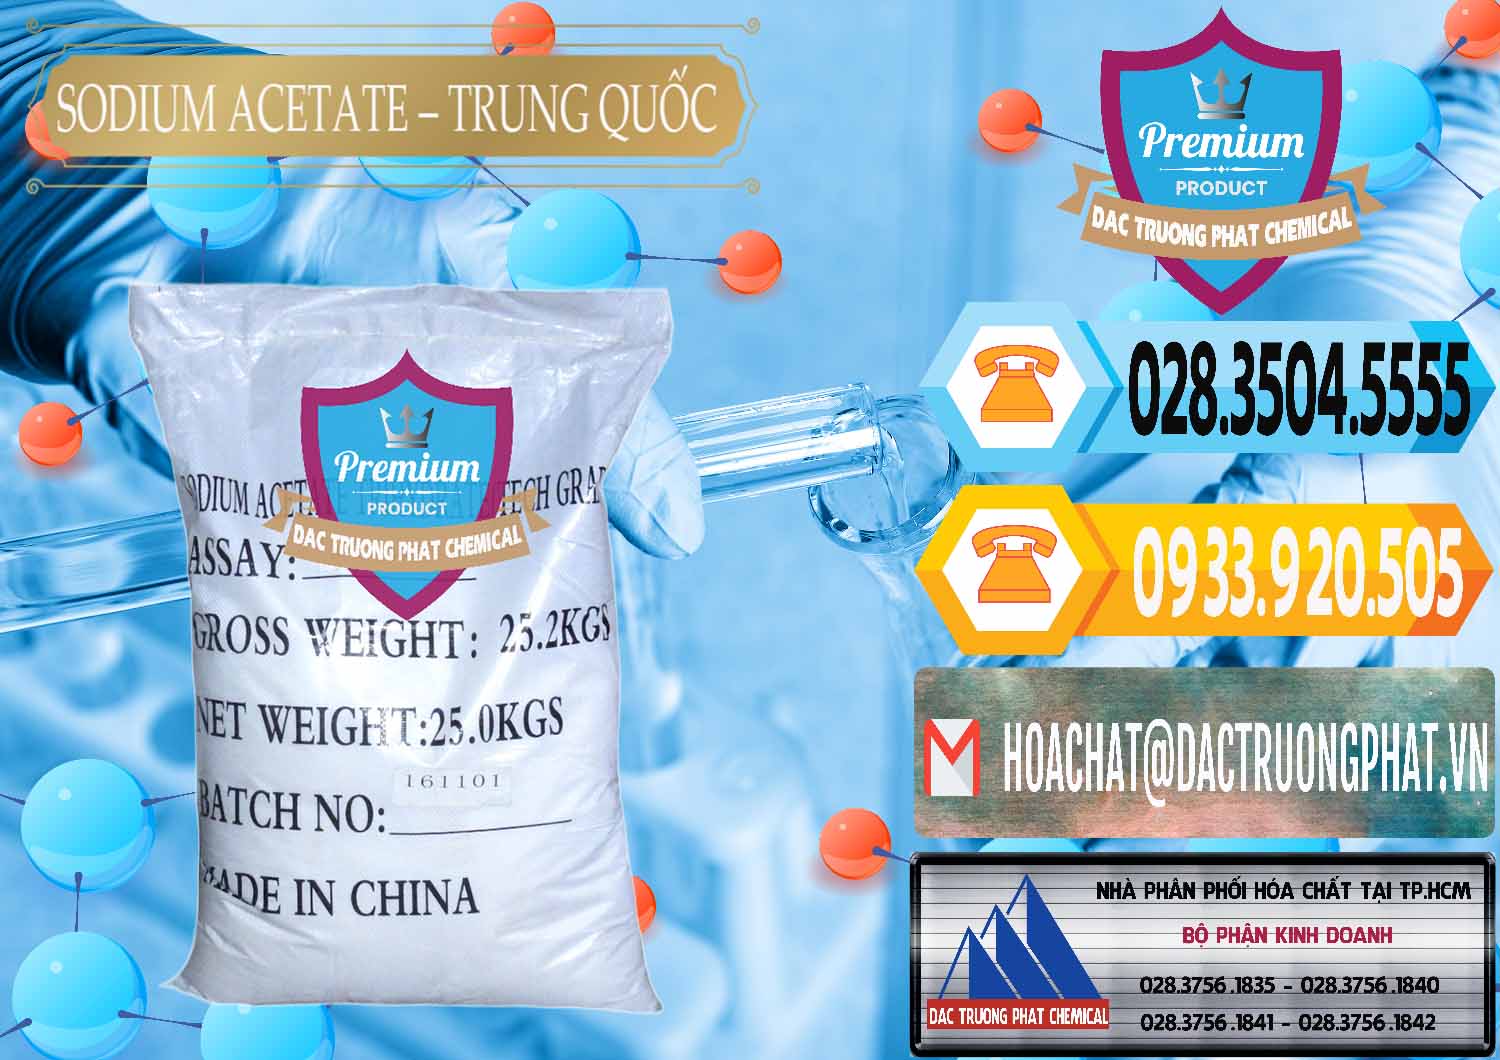 Đơn vị chuyên kinh doanh & bán Sodium Acetate - Natri Acetate Trung Quốc China - 0134 - Chuyên phân phối ( nhập khẩu ) hóa chất tại TP.HCM - hoachattayrua.net